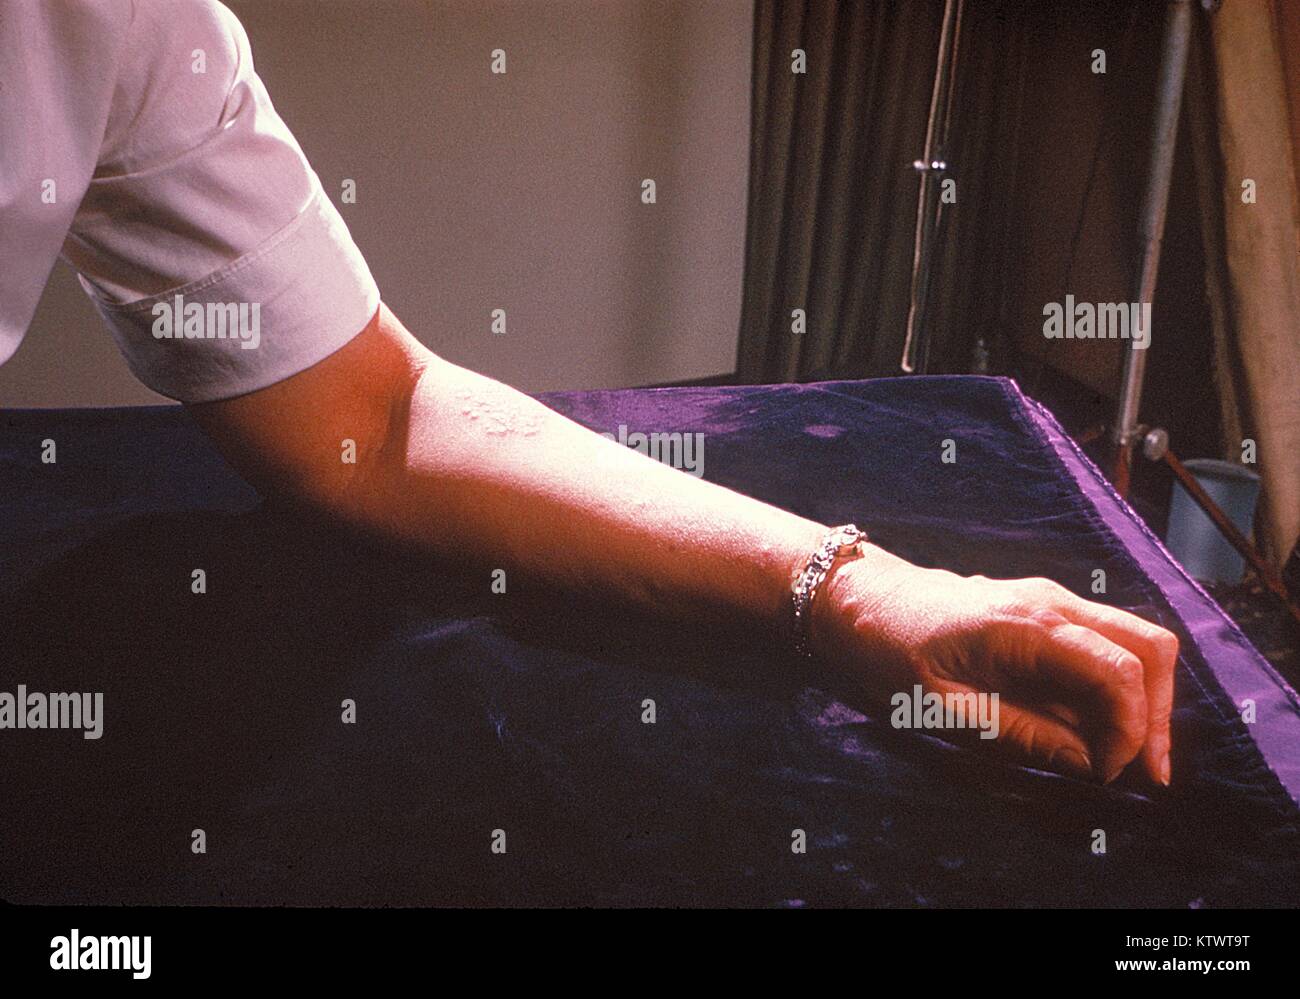 Un paziente?s braccio sinistro rivela la presenza di eritema nodoso. Di solito, eritema nodoso è una sequela secondaria di un altro processo di malattia o a causa di un farmaco reazione di ipersensibilità che si manifesta come gara red protuberanze sulla pelle. Immagine cortesia CDC/Margaret Renz, 1964. Foto Stock